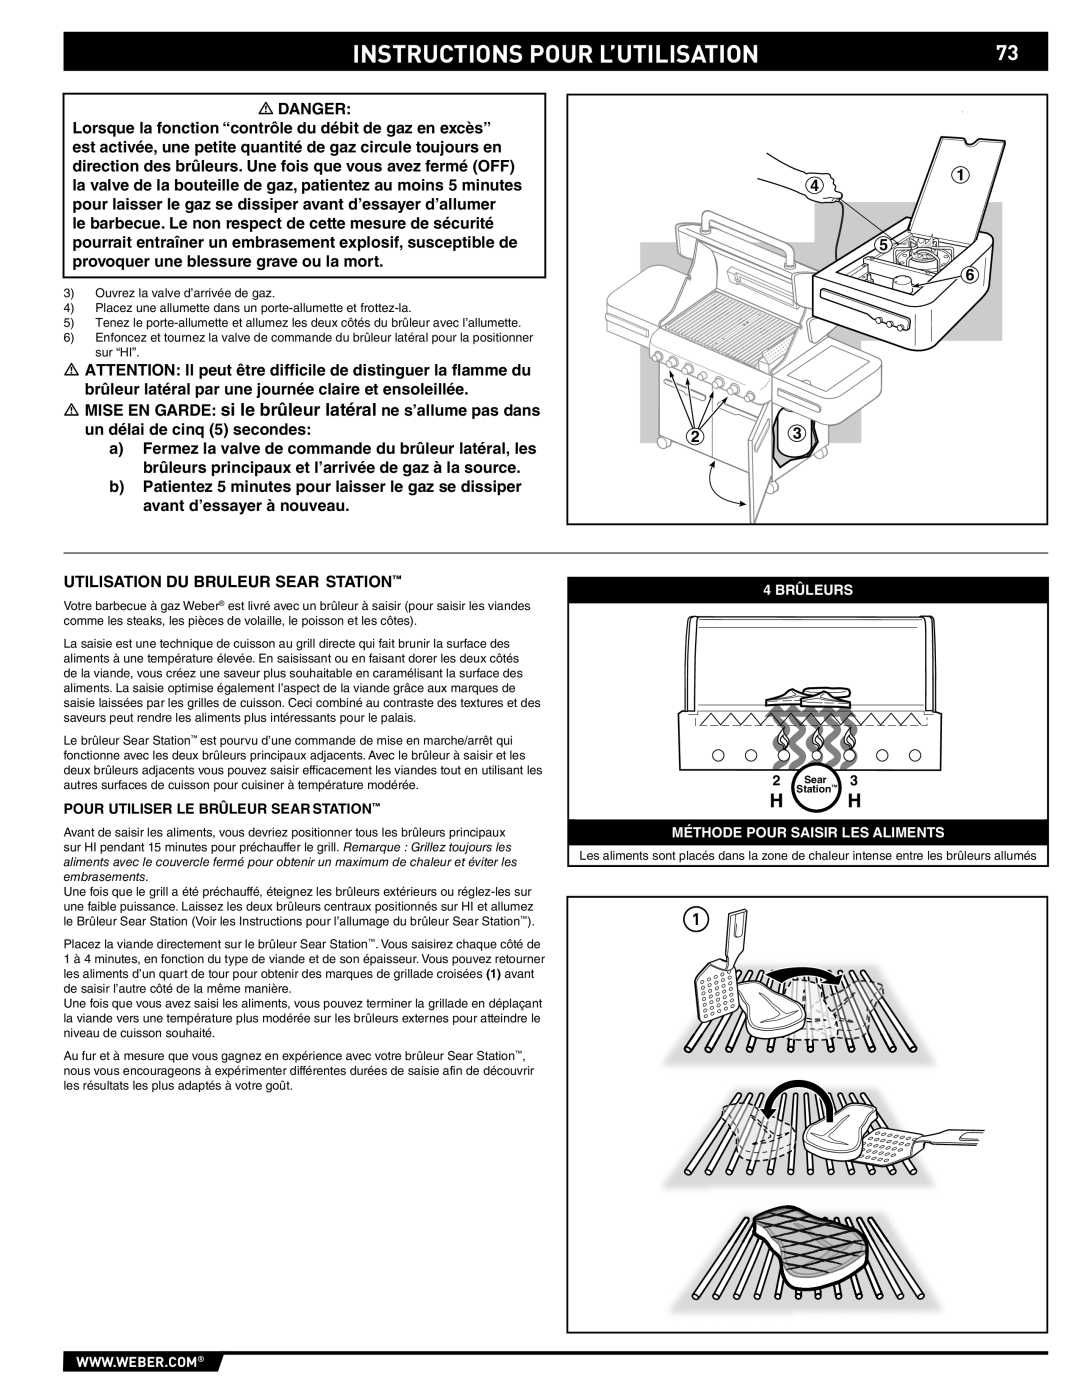 Summit 89190 manual Instructions Pour L’Utilisation, Pour Utiliser Le Brûleur Sear Station 